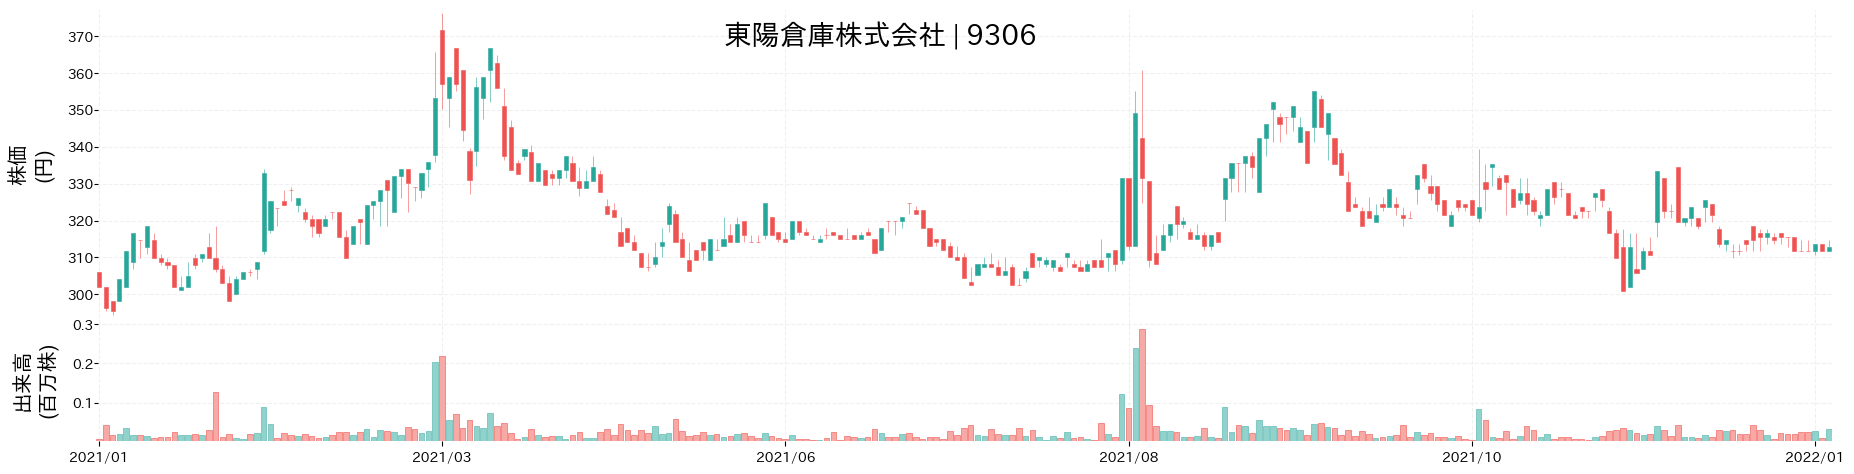 東陽倉庫の株価推移(2021)